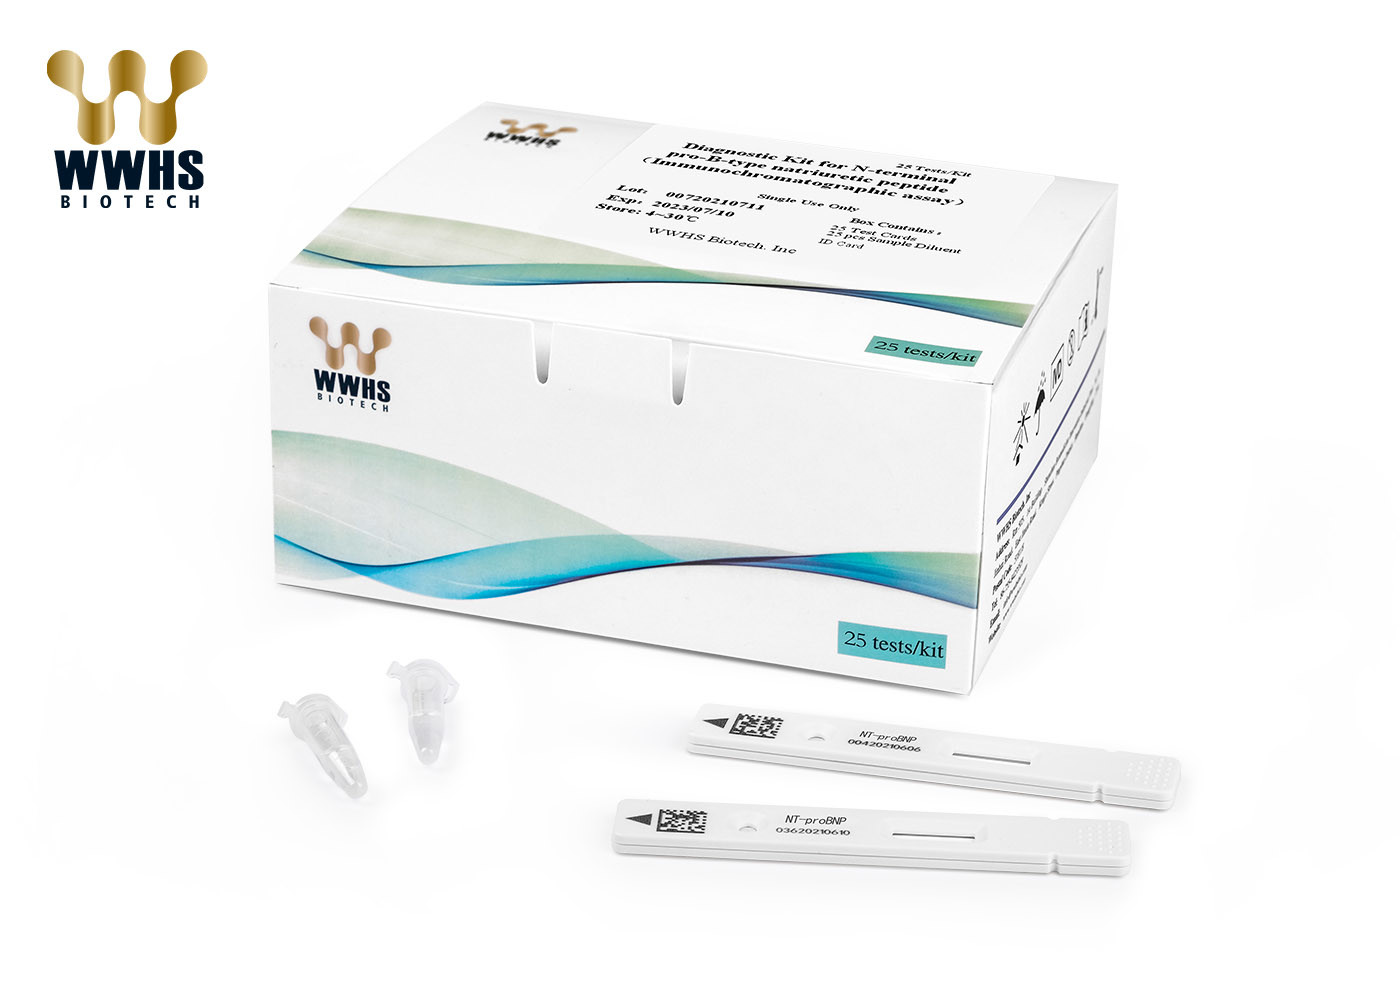 CE NT-proBNP Rapid Test Kit IFA Colloidal Gold IVD Diagnostic